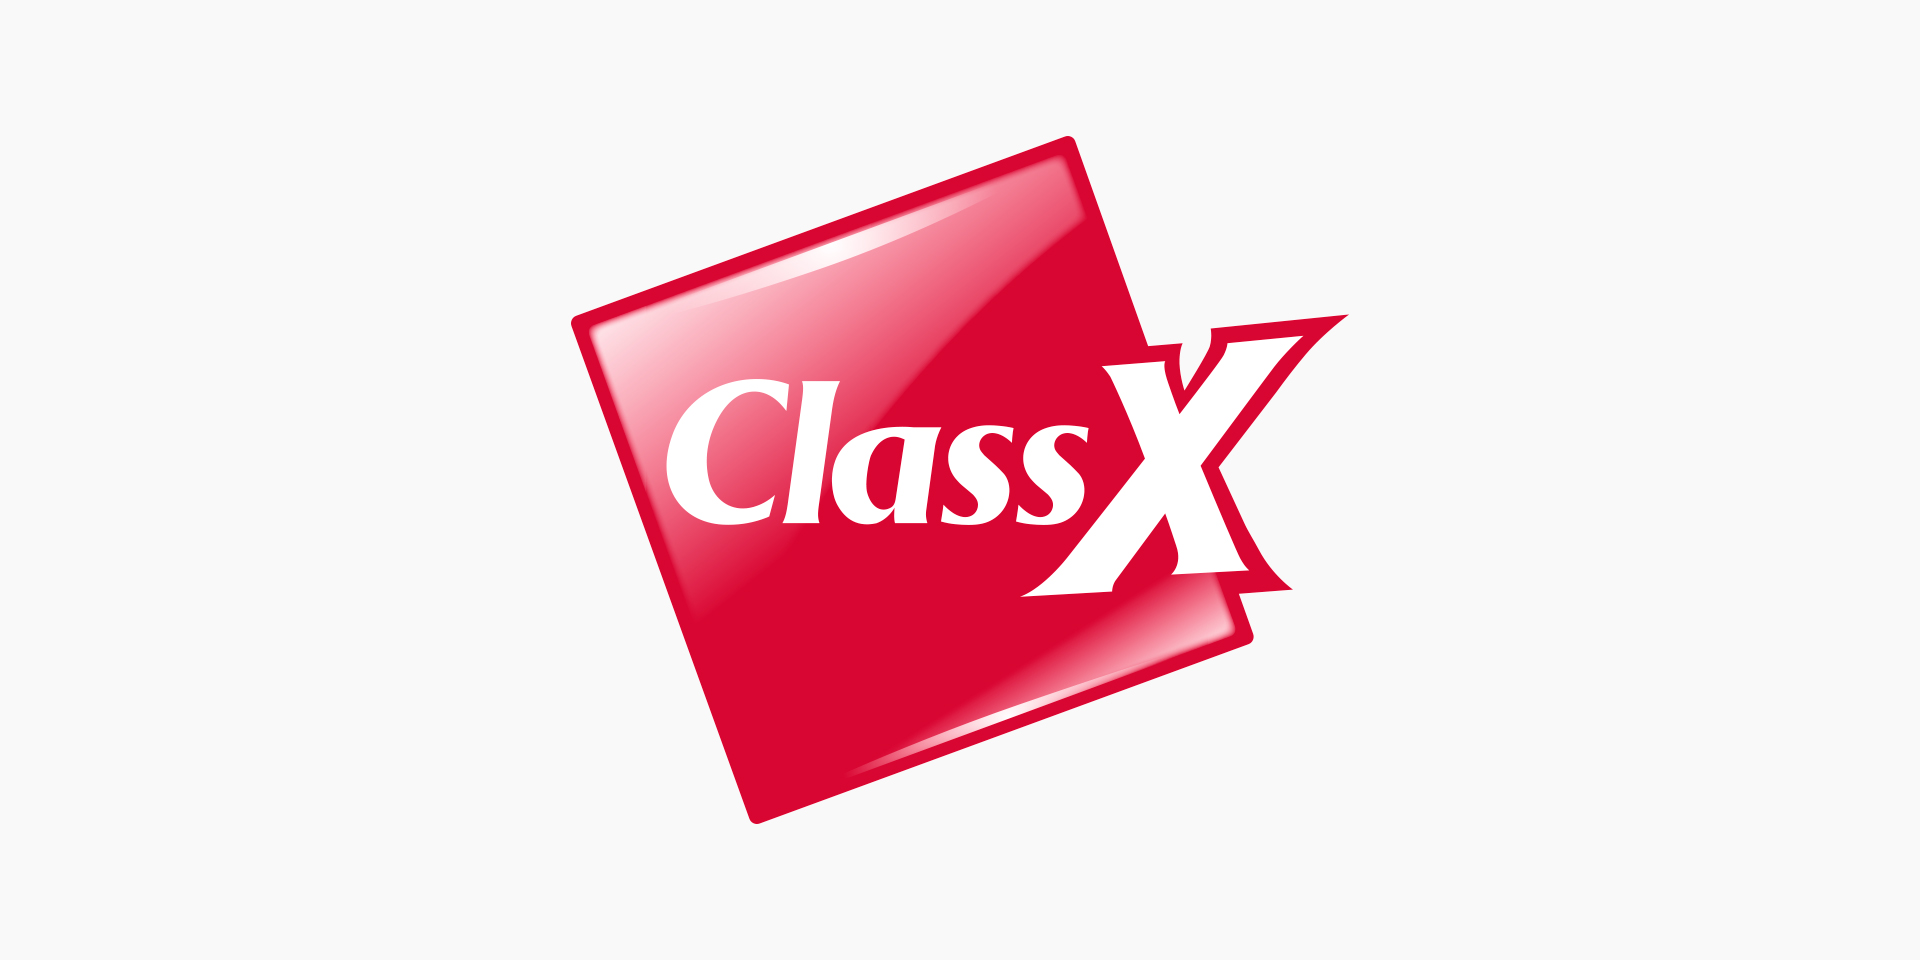 07 Class X